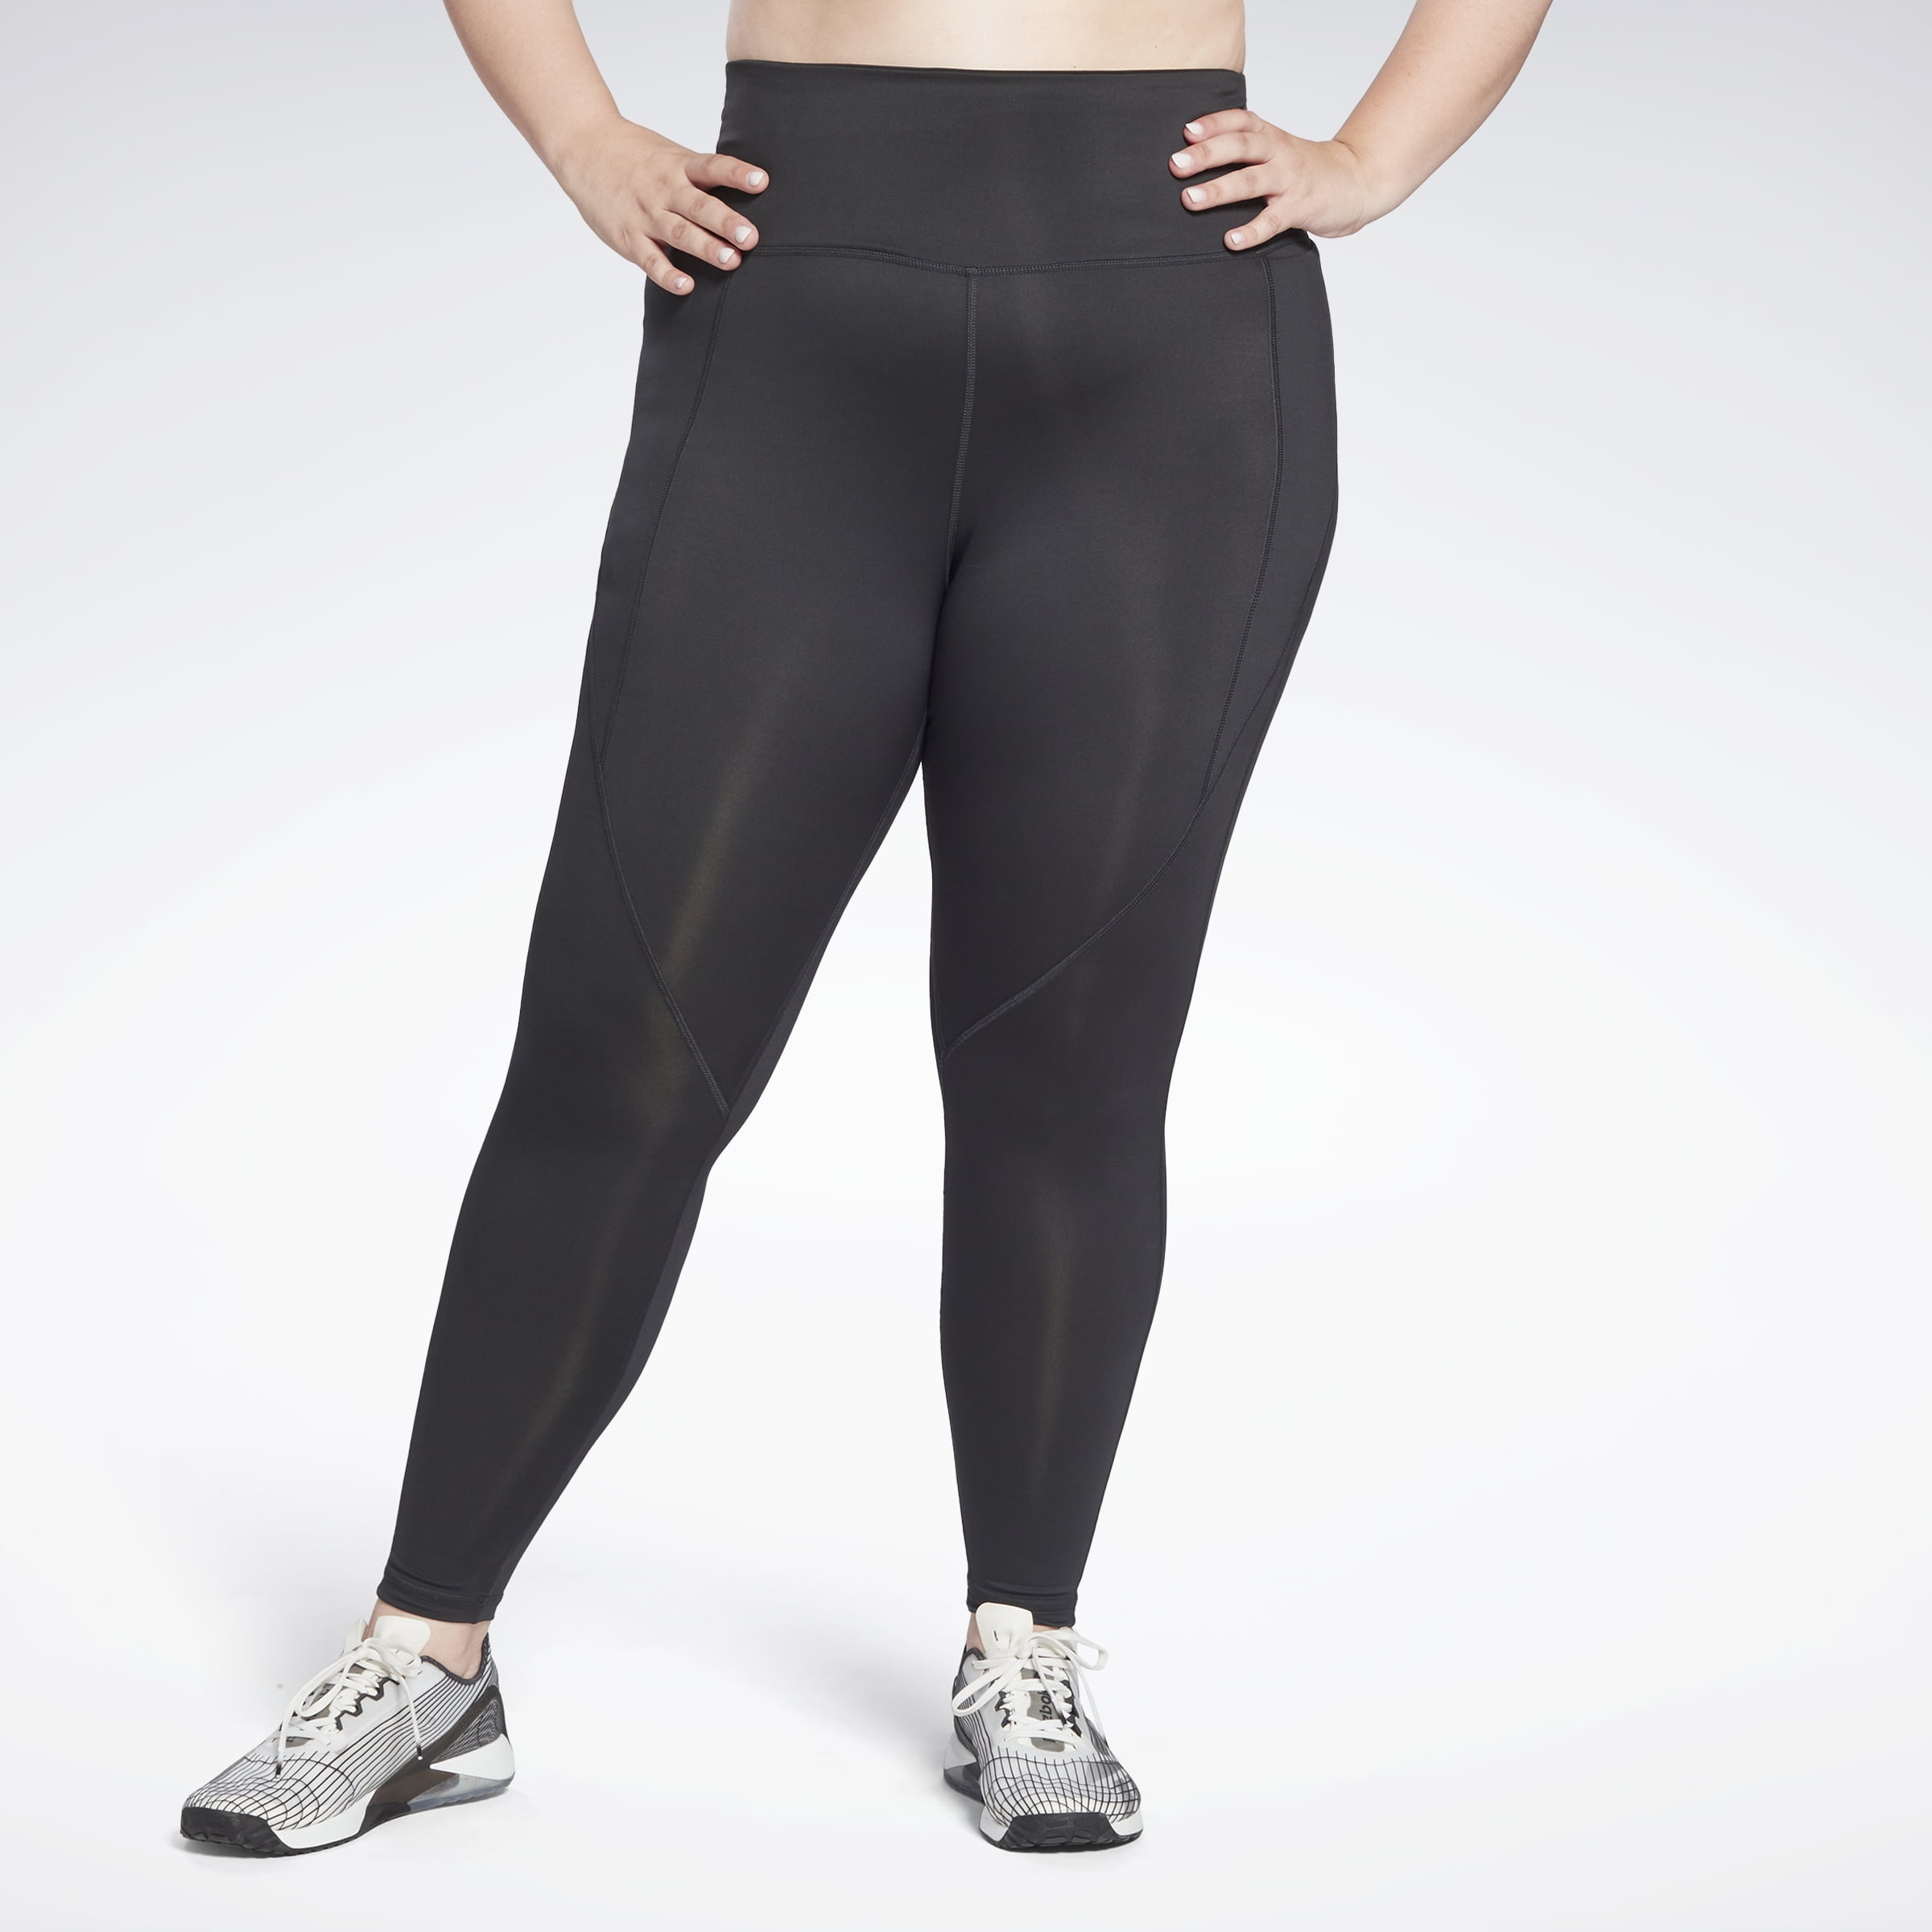 Reebok Women's Workout Ready Pant Program High Rise Leggings (Plus Size)